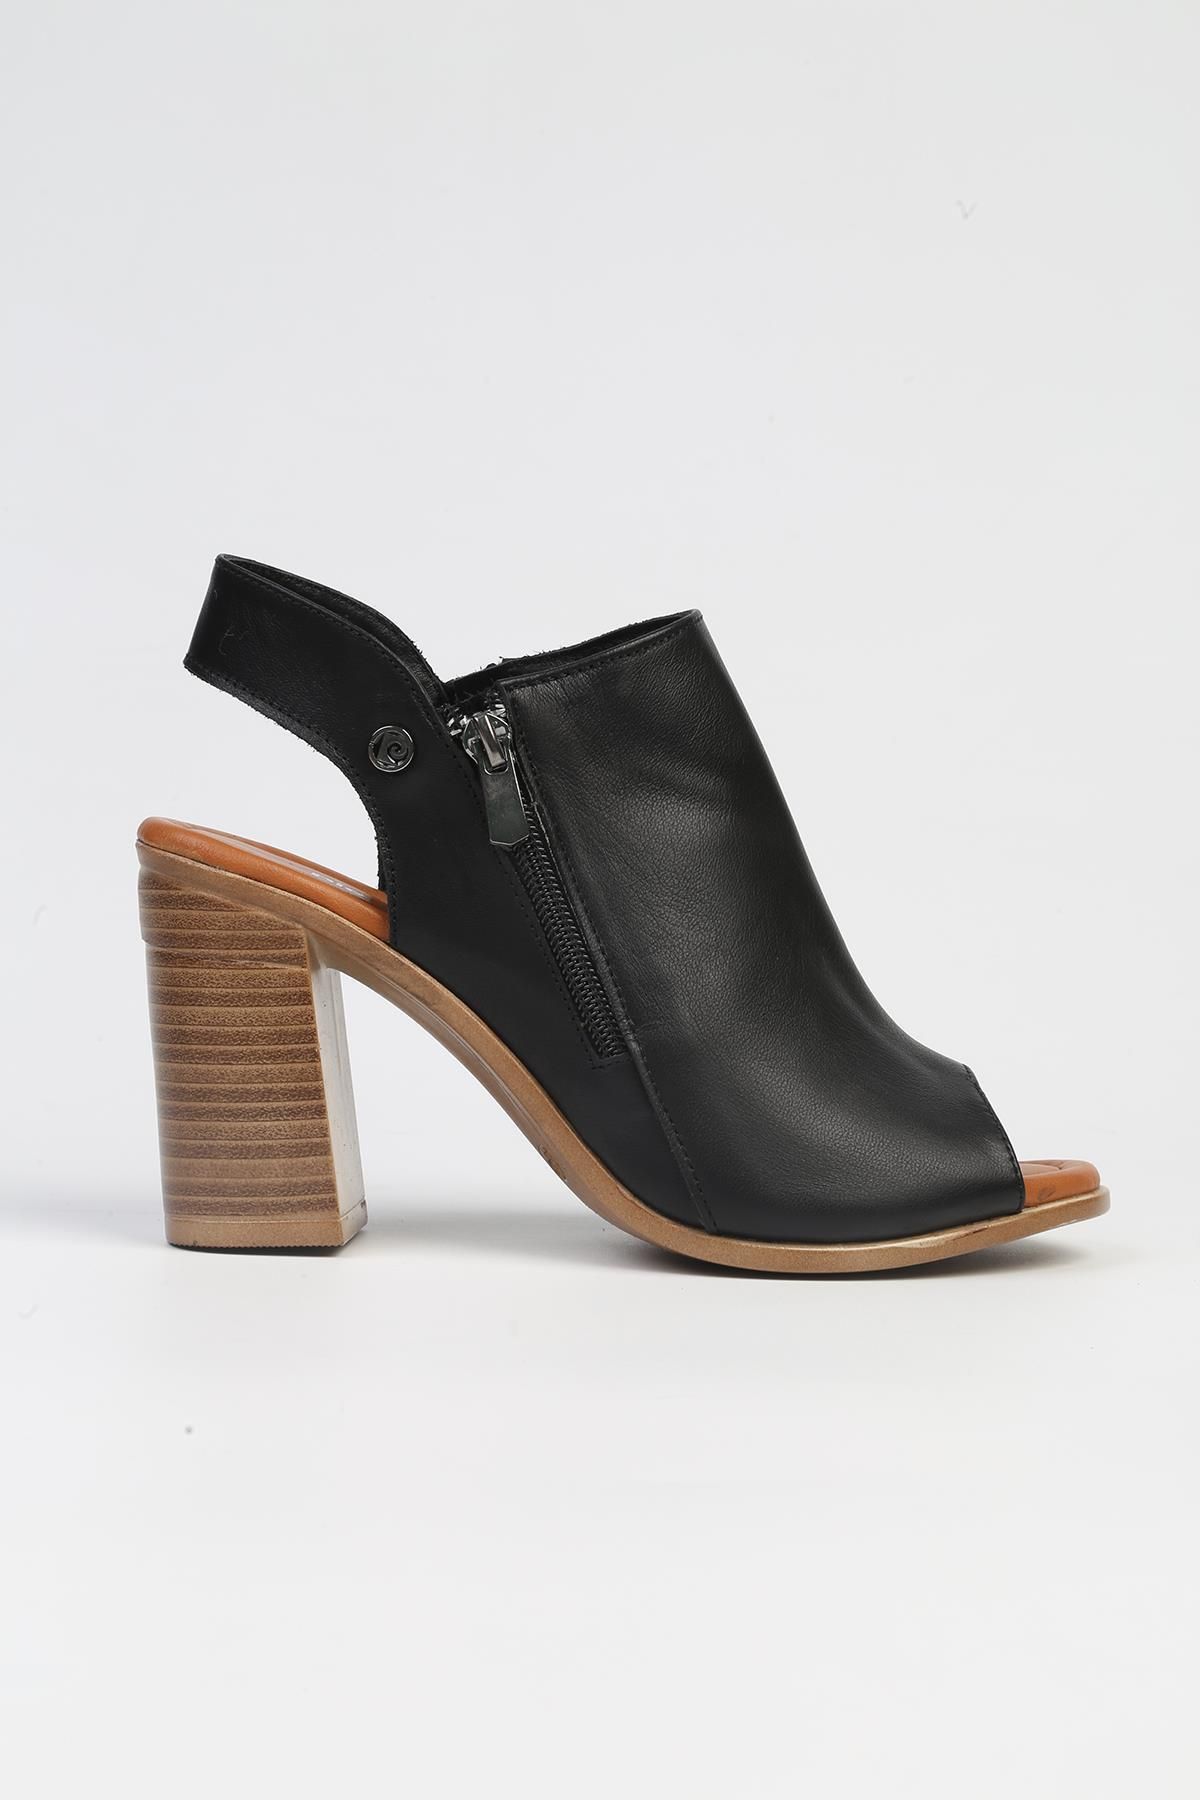 Pierre Cardin ® | PC-7228 - 3807 Siyah-Kadın Topuklu Ayakkabı